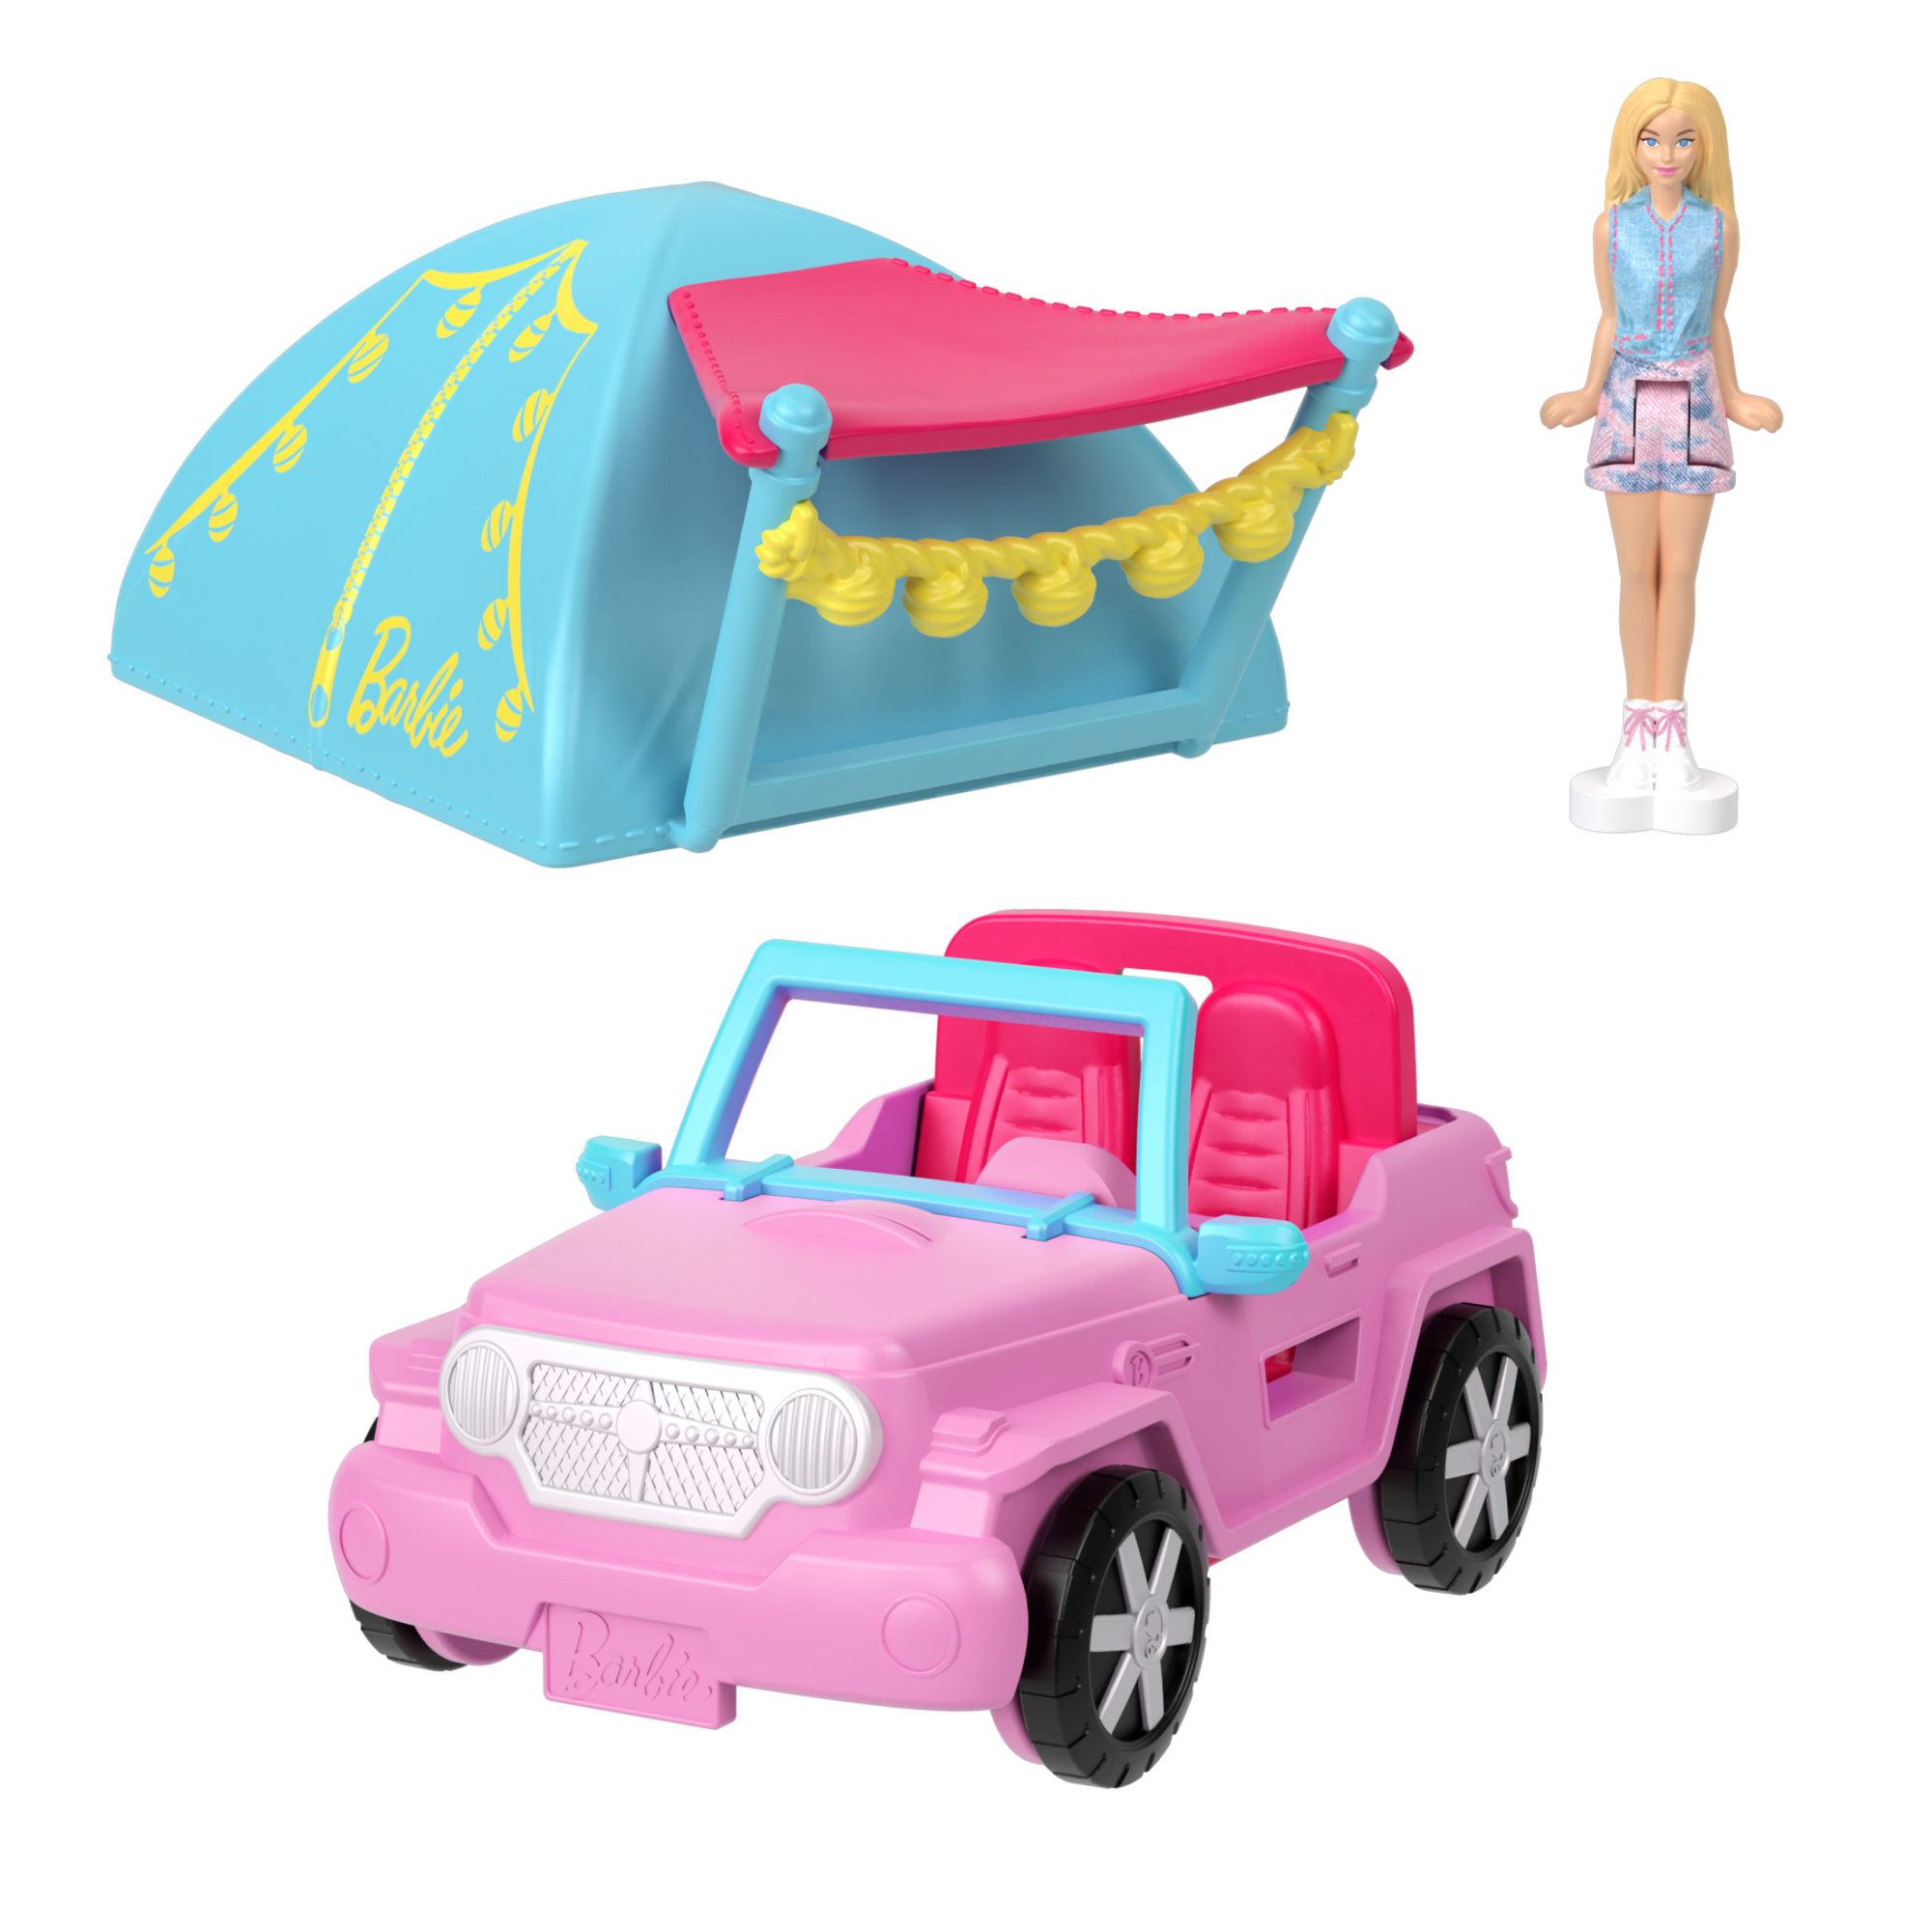 Mini barbieland - auto jeep fuoristrada - set con mini veicolo e bambola con sorpresa cambia colore in acqua - Barbie